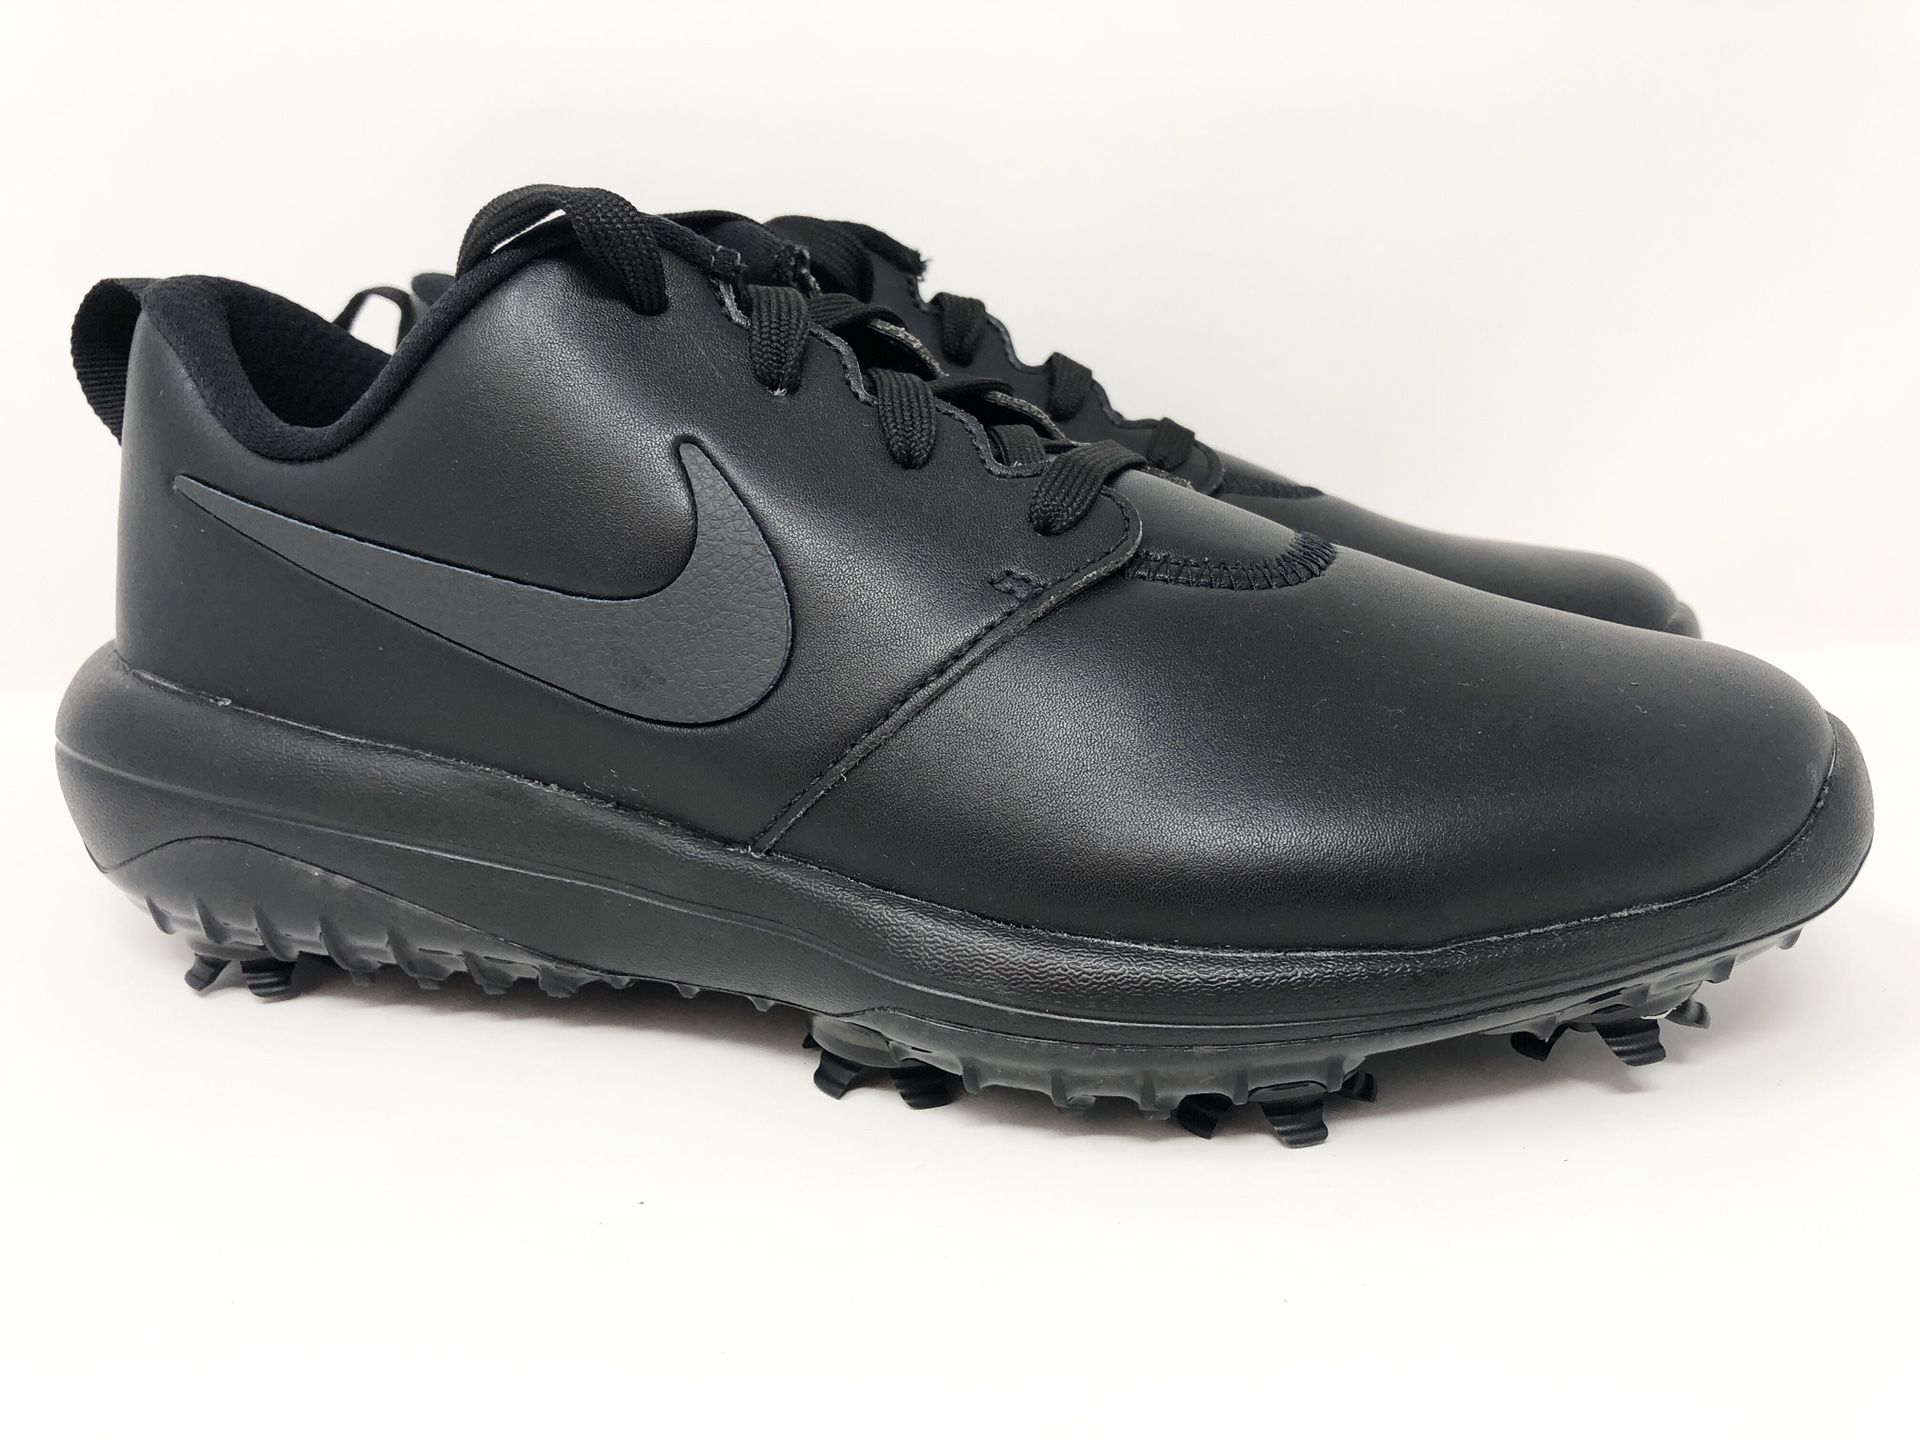 Nike Roshe G Tour Golf Shoes Black AR5582-007 Women's Size 7.5